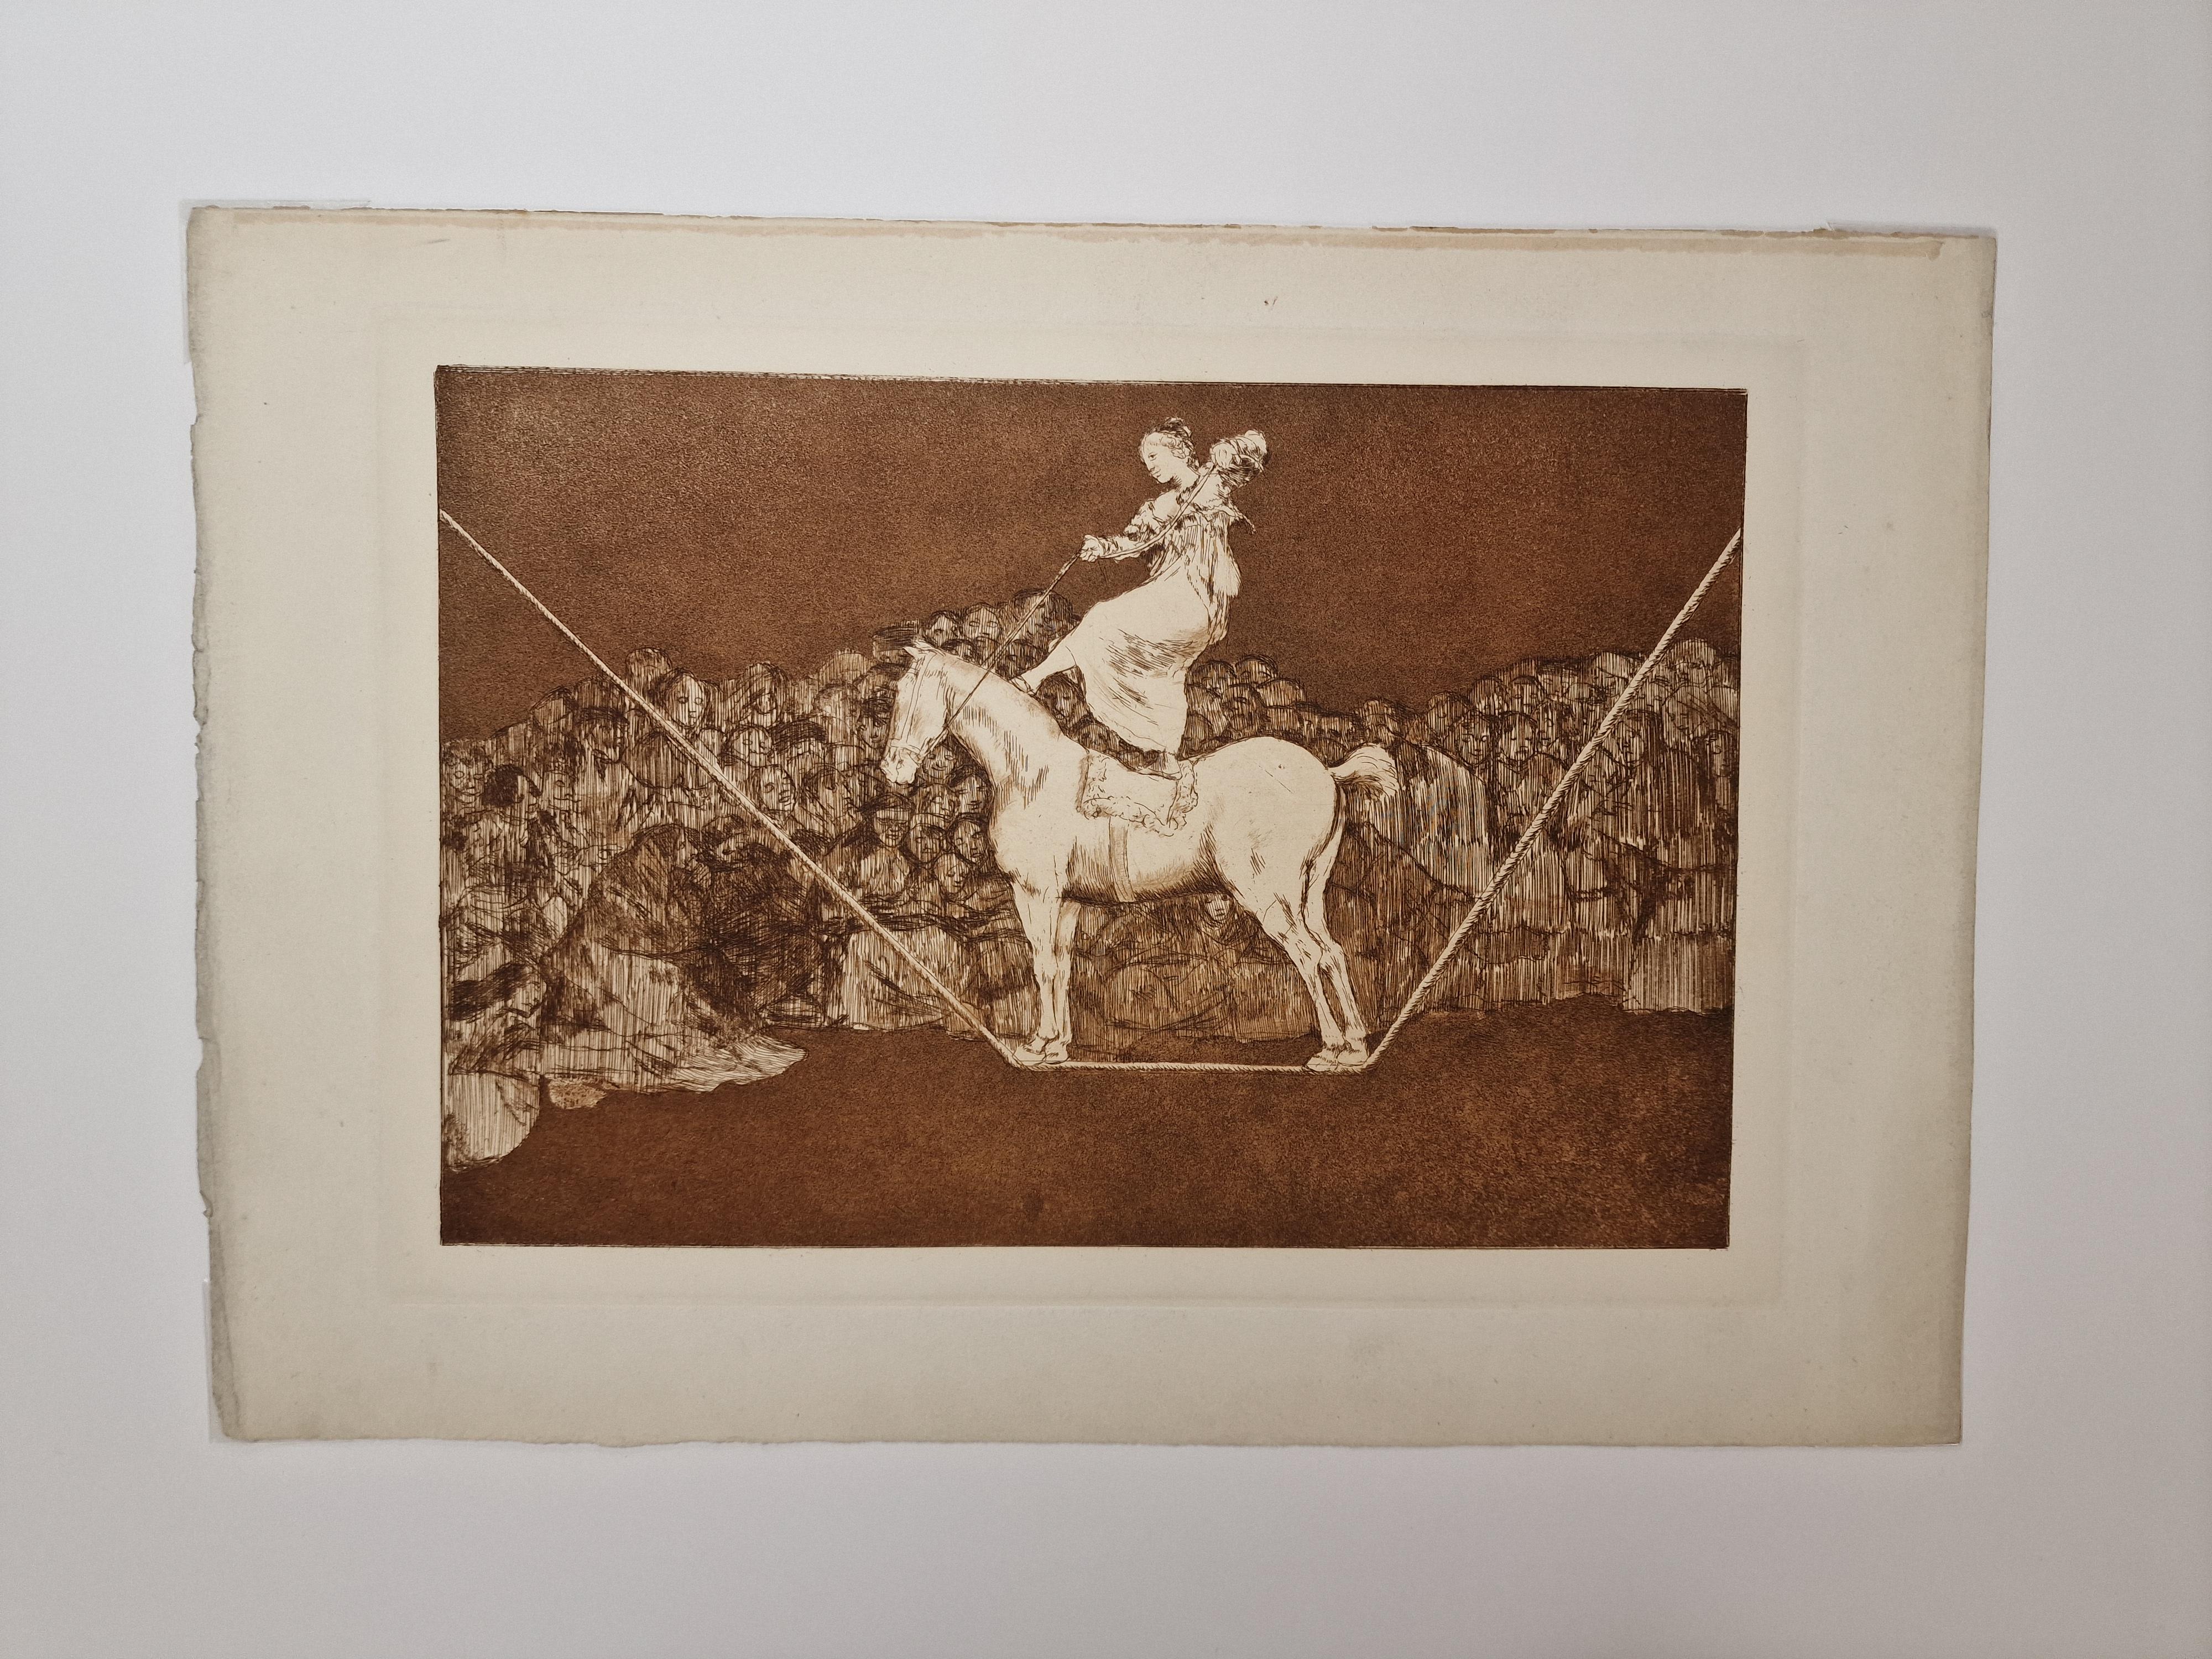 Une Reine du cirque. ca. 1820. – Print von Francisco Goya